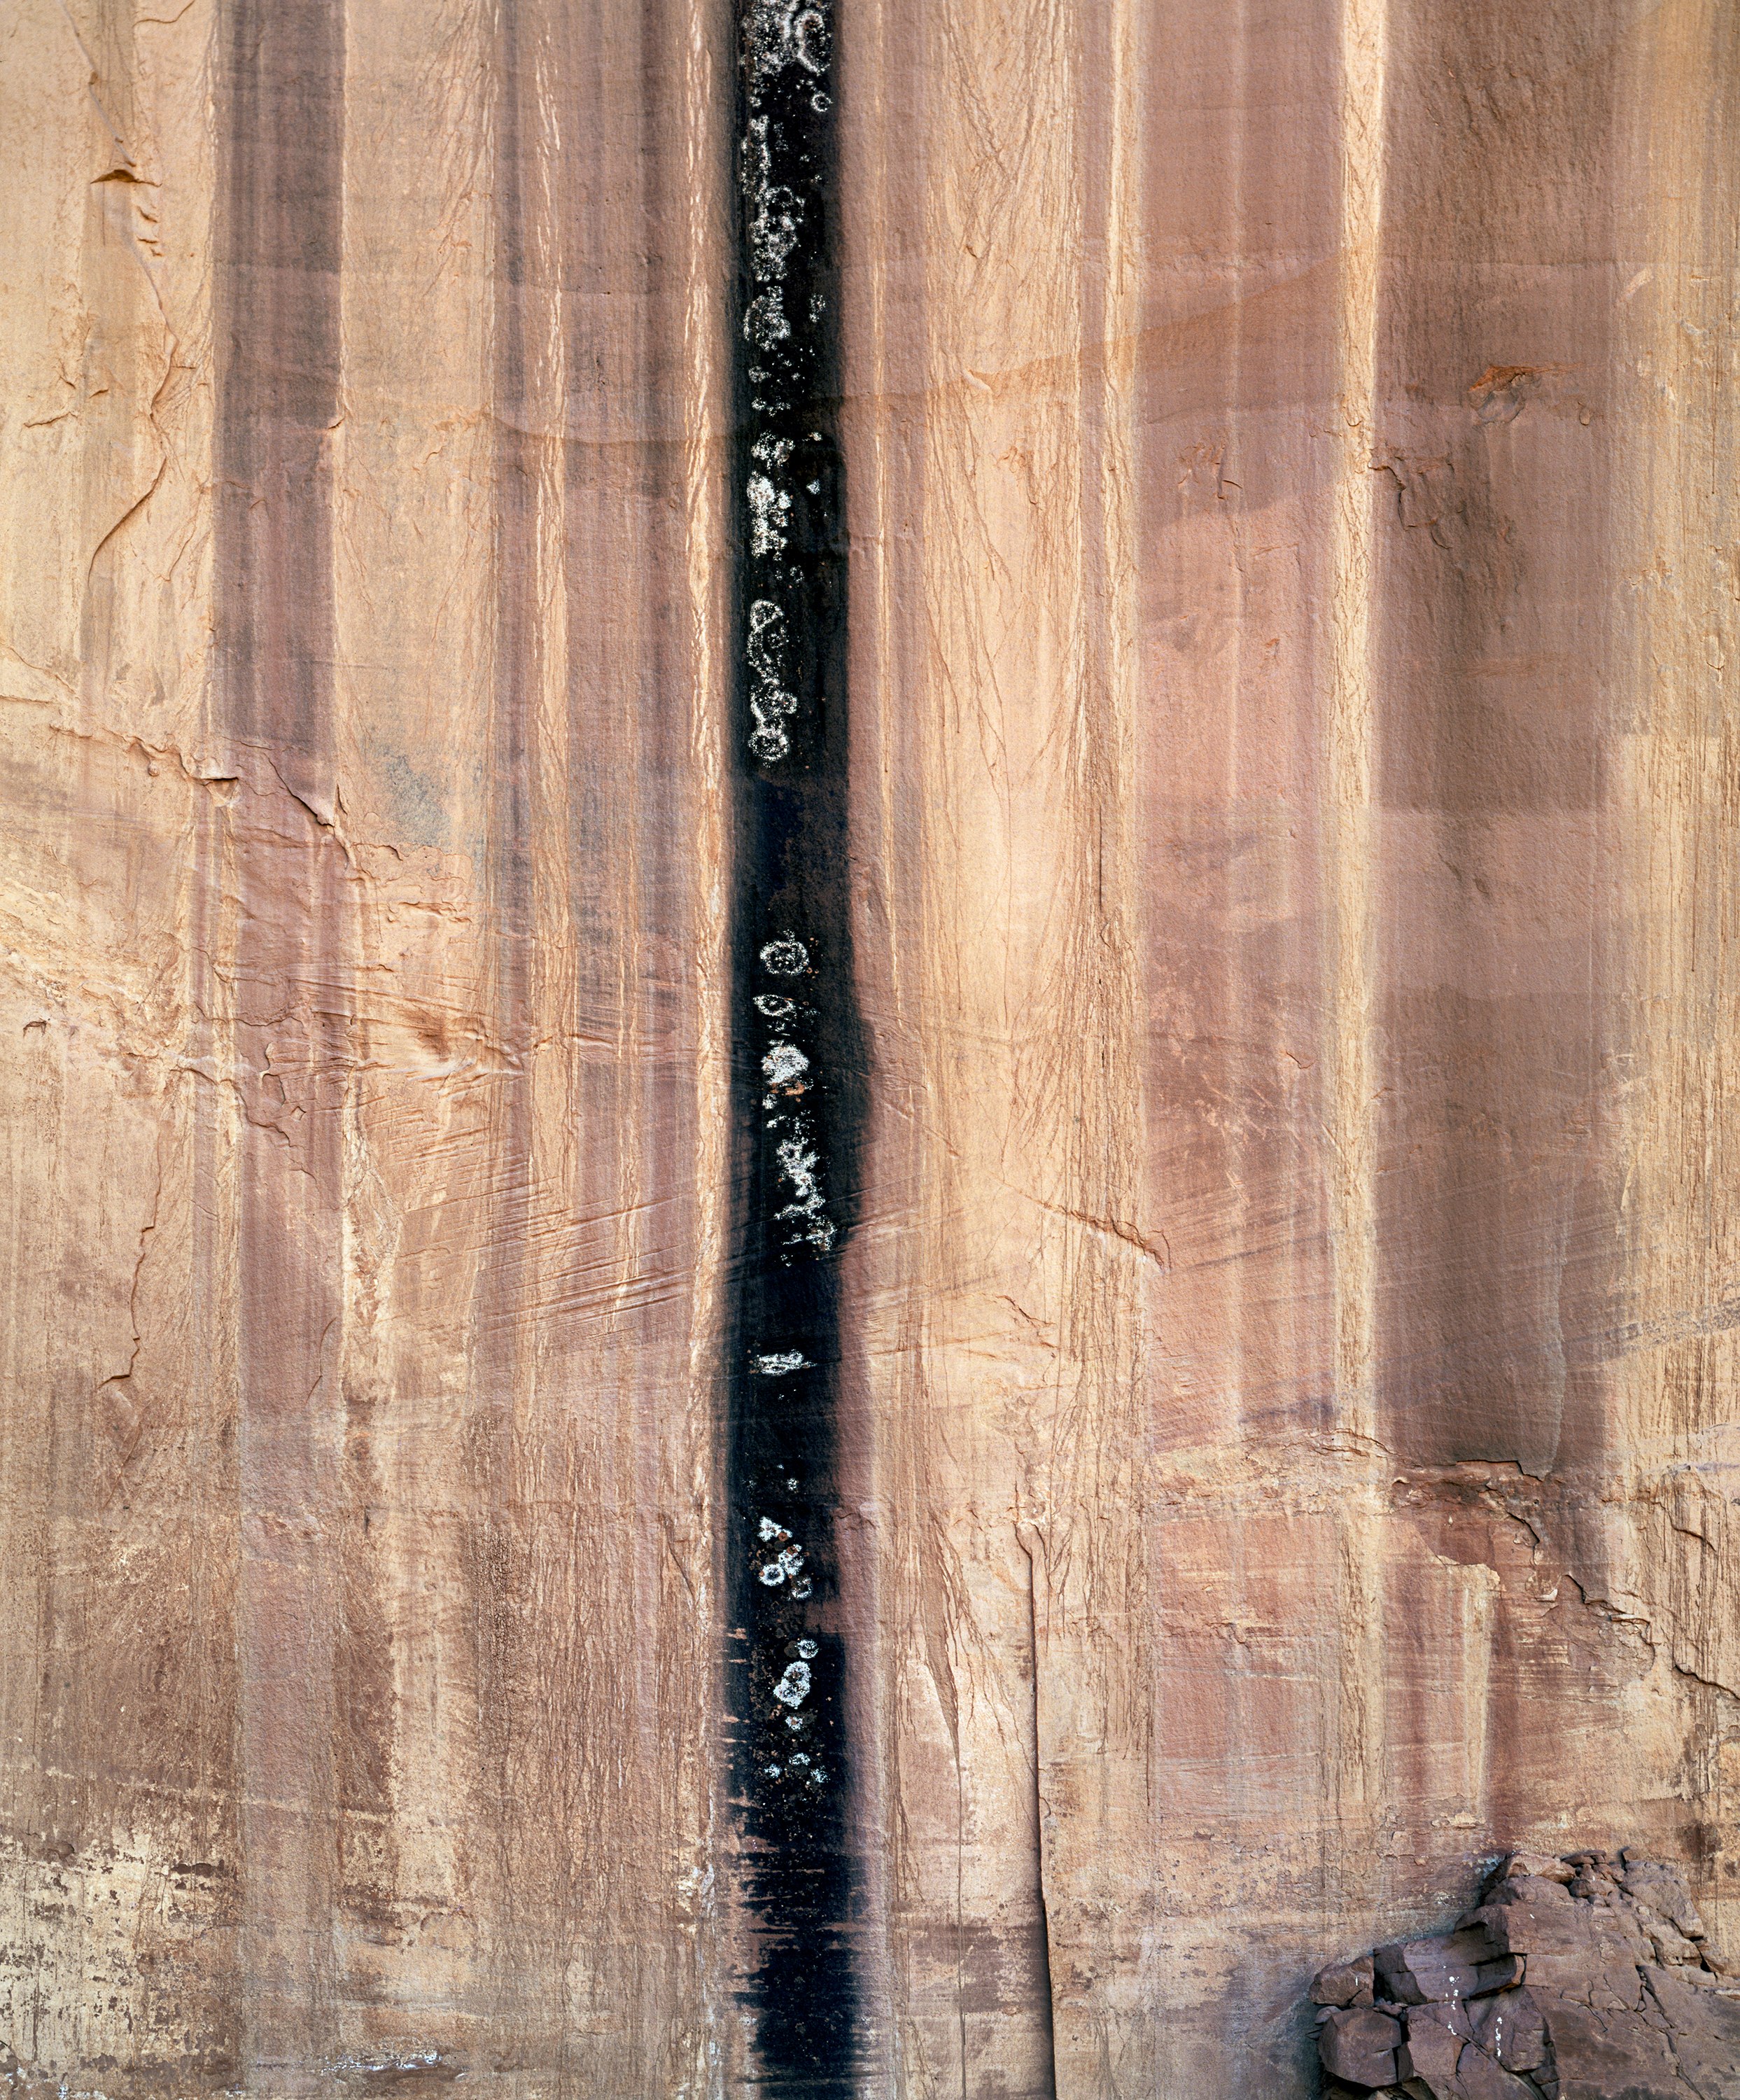 Desert Varnish and Lichens, Canyonlands, Utah 